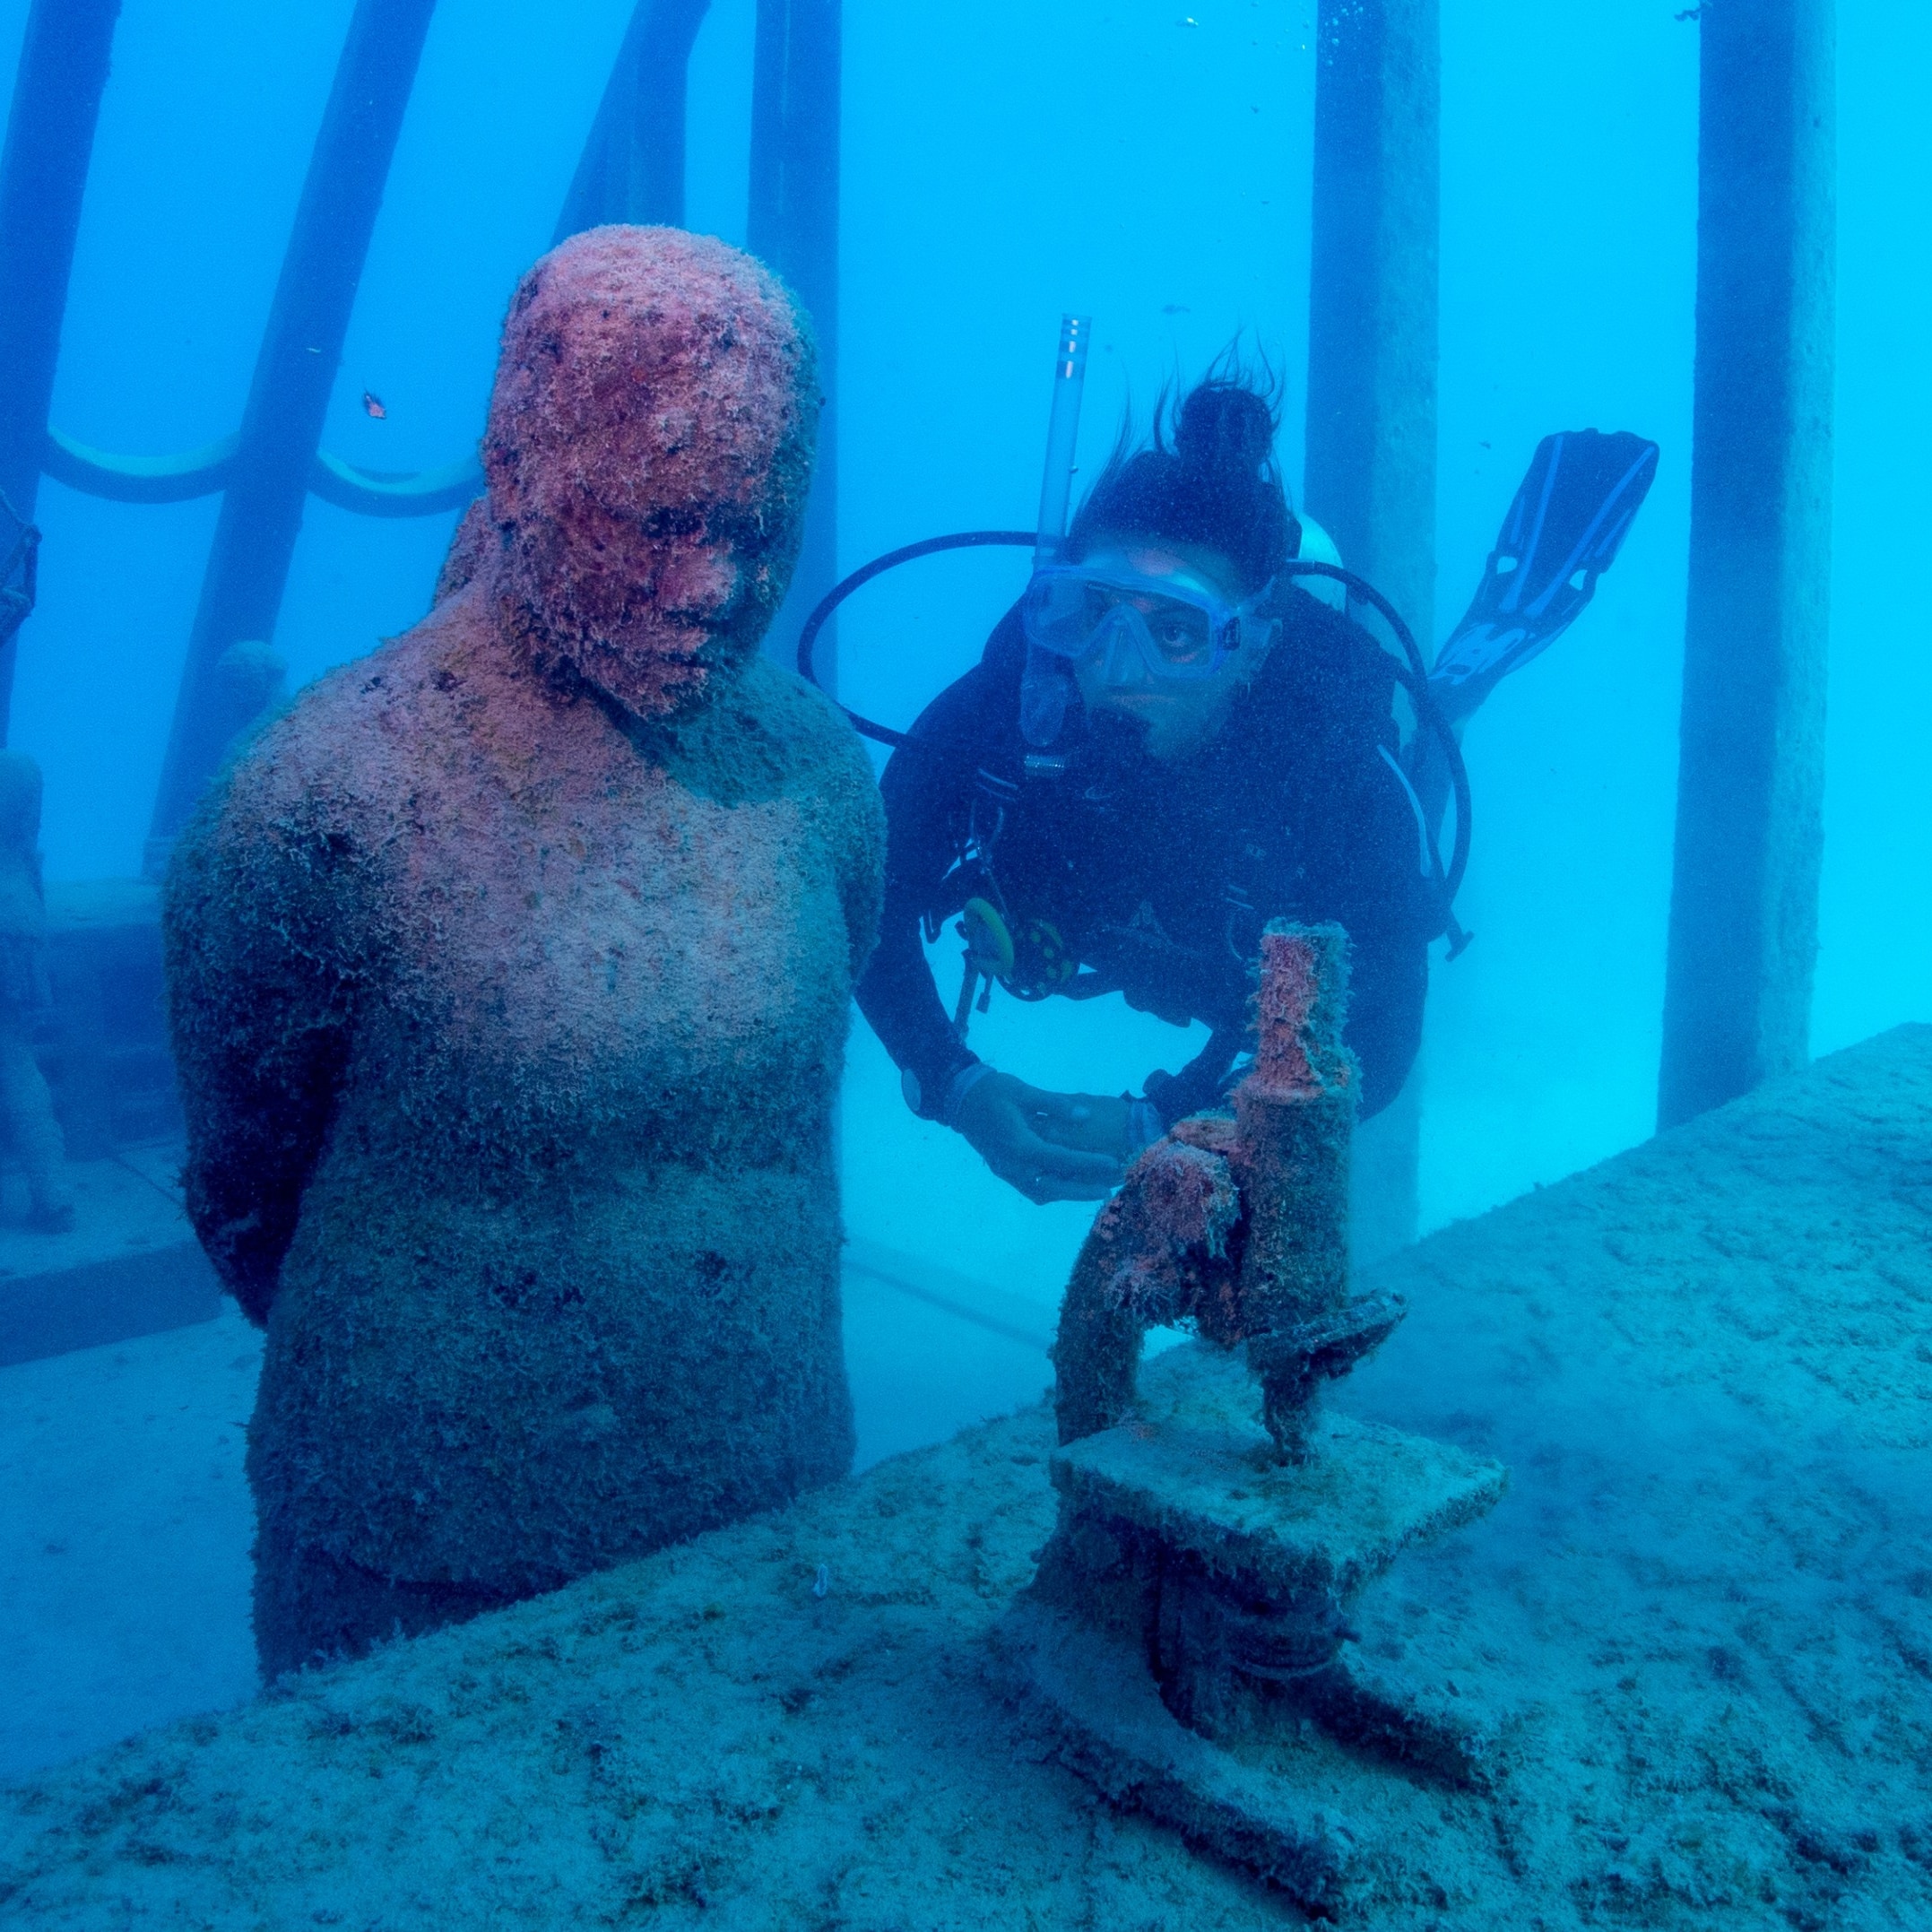 Taucher schwimmt neben einer Statue im Coral Greenhouse des Museum of Underwater Art © Gemma Molinaro Photographer